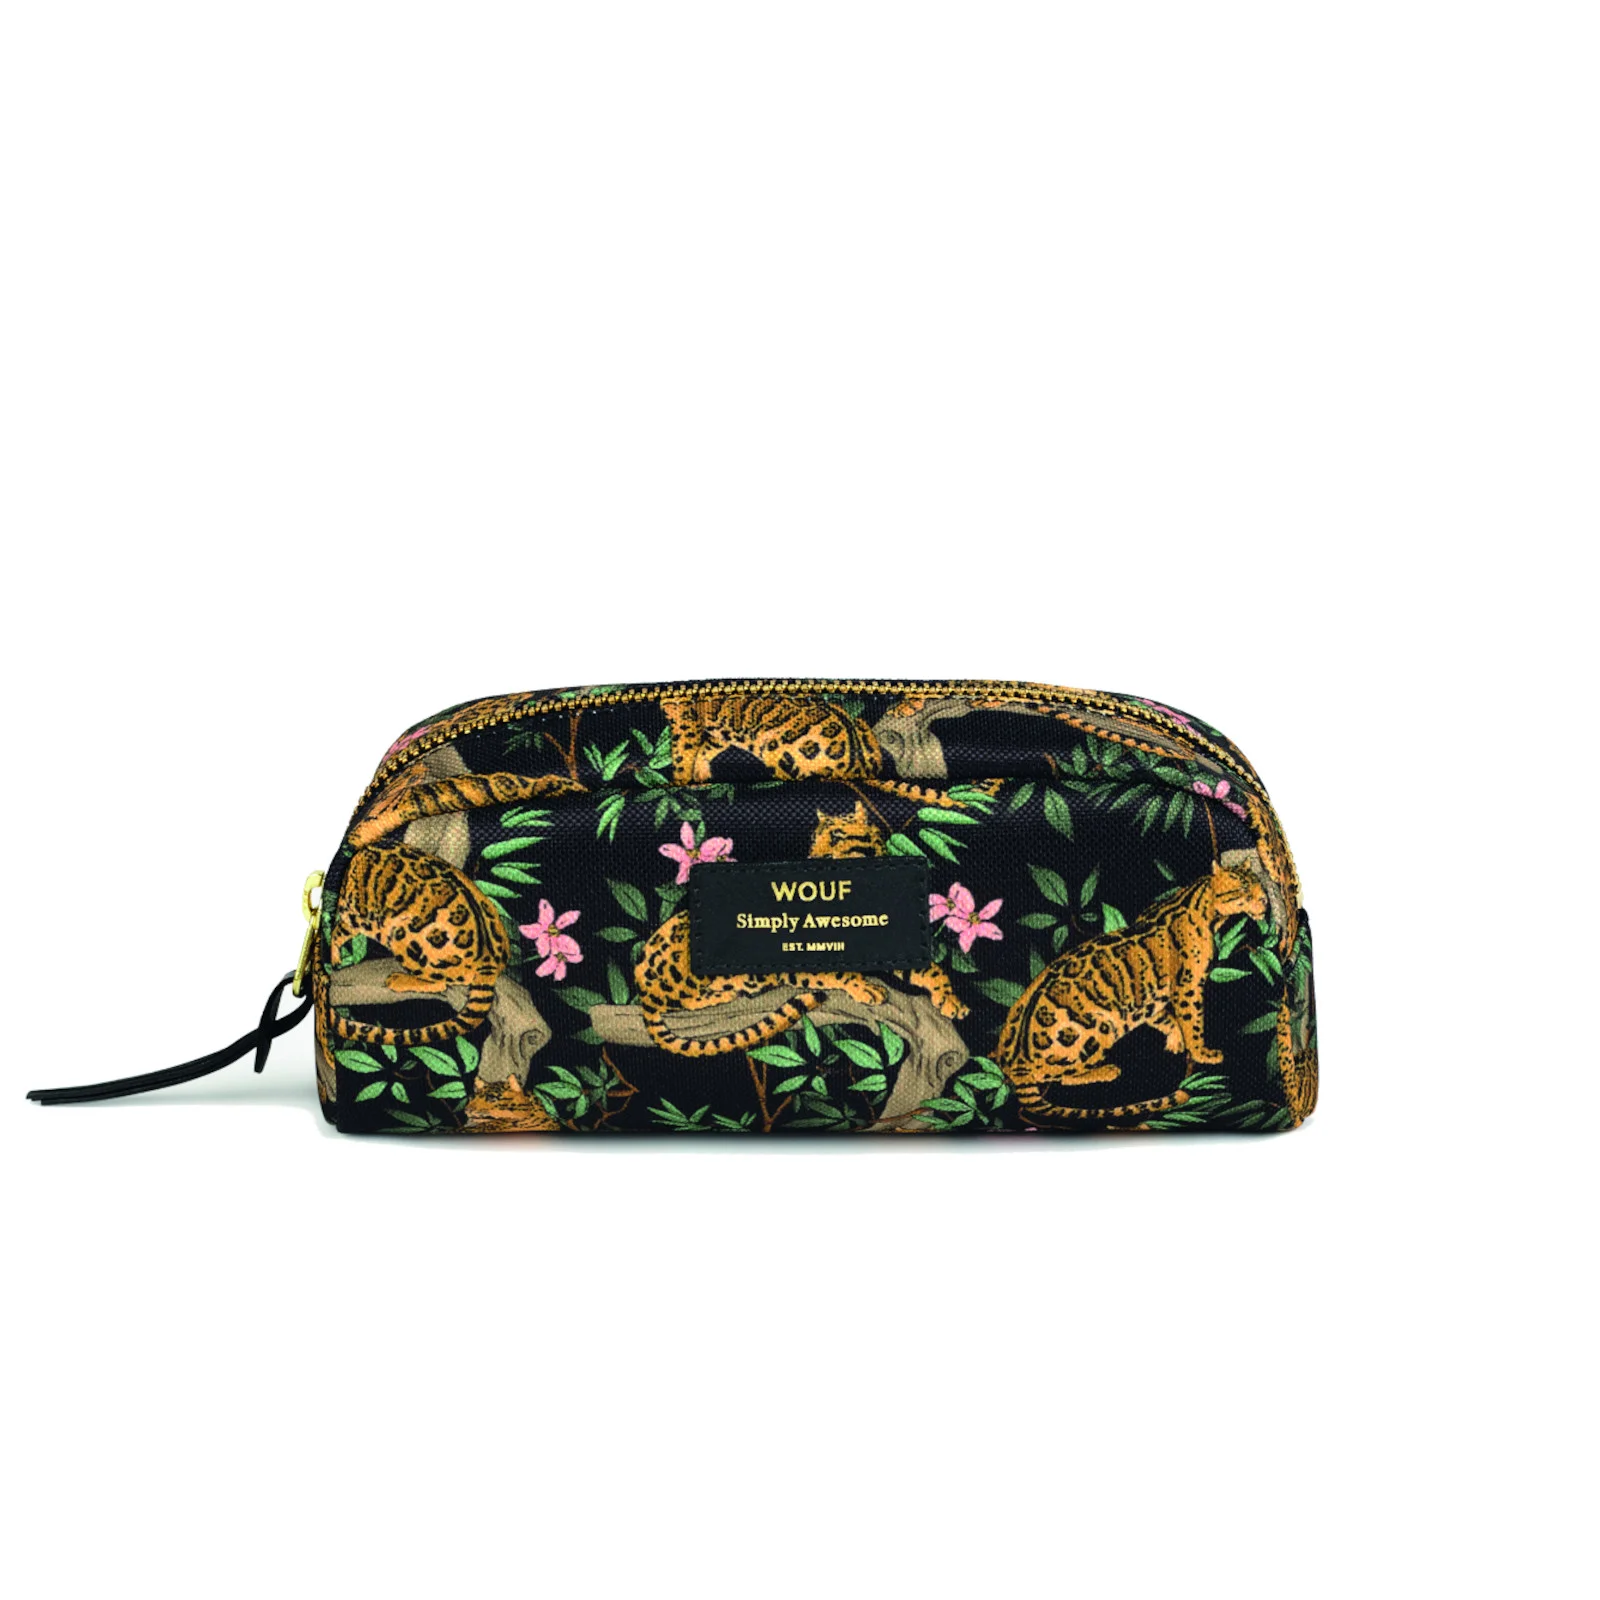 Wouf Beauty Bag - Small - Lazy Jungle Image 1